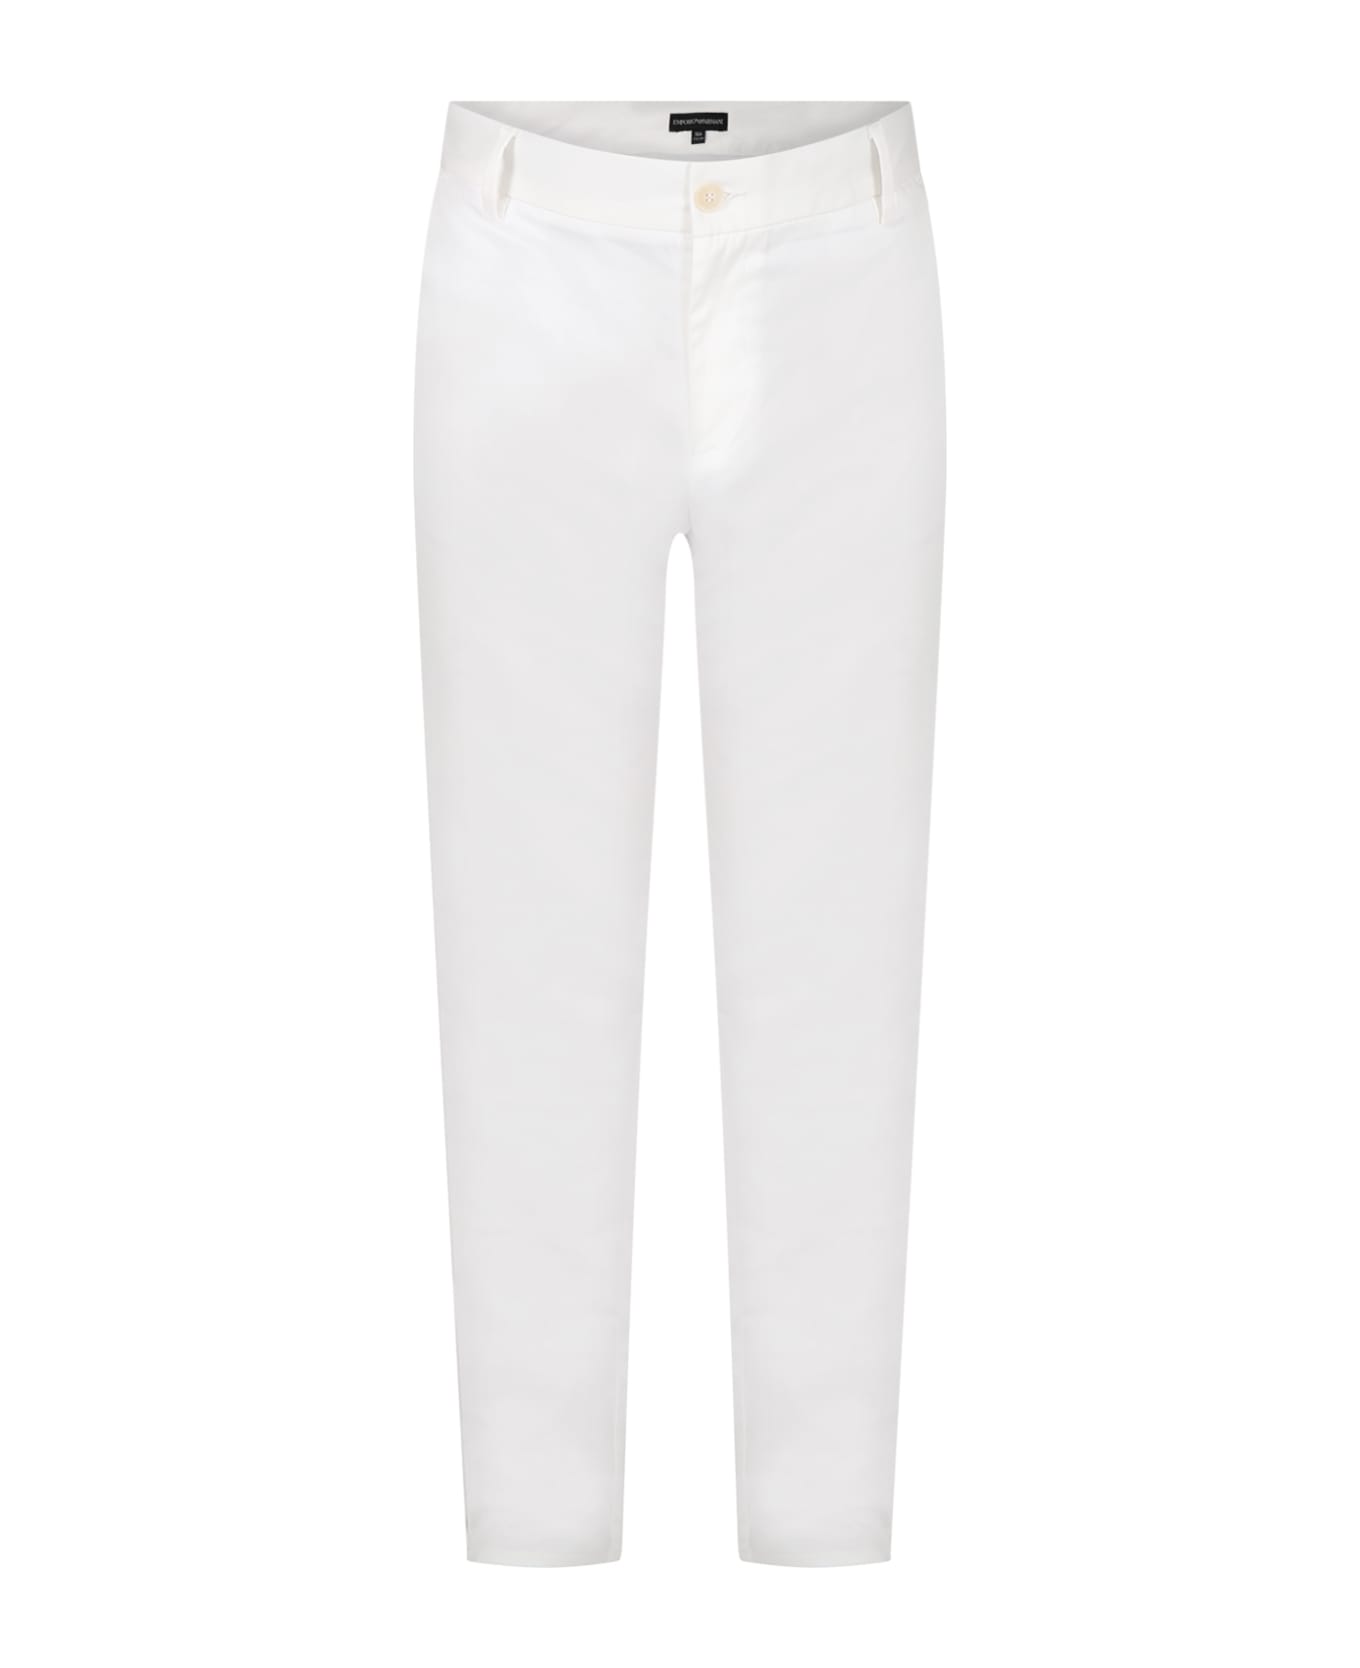 Emporio Armani White Trousers For Boy With Logo - White